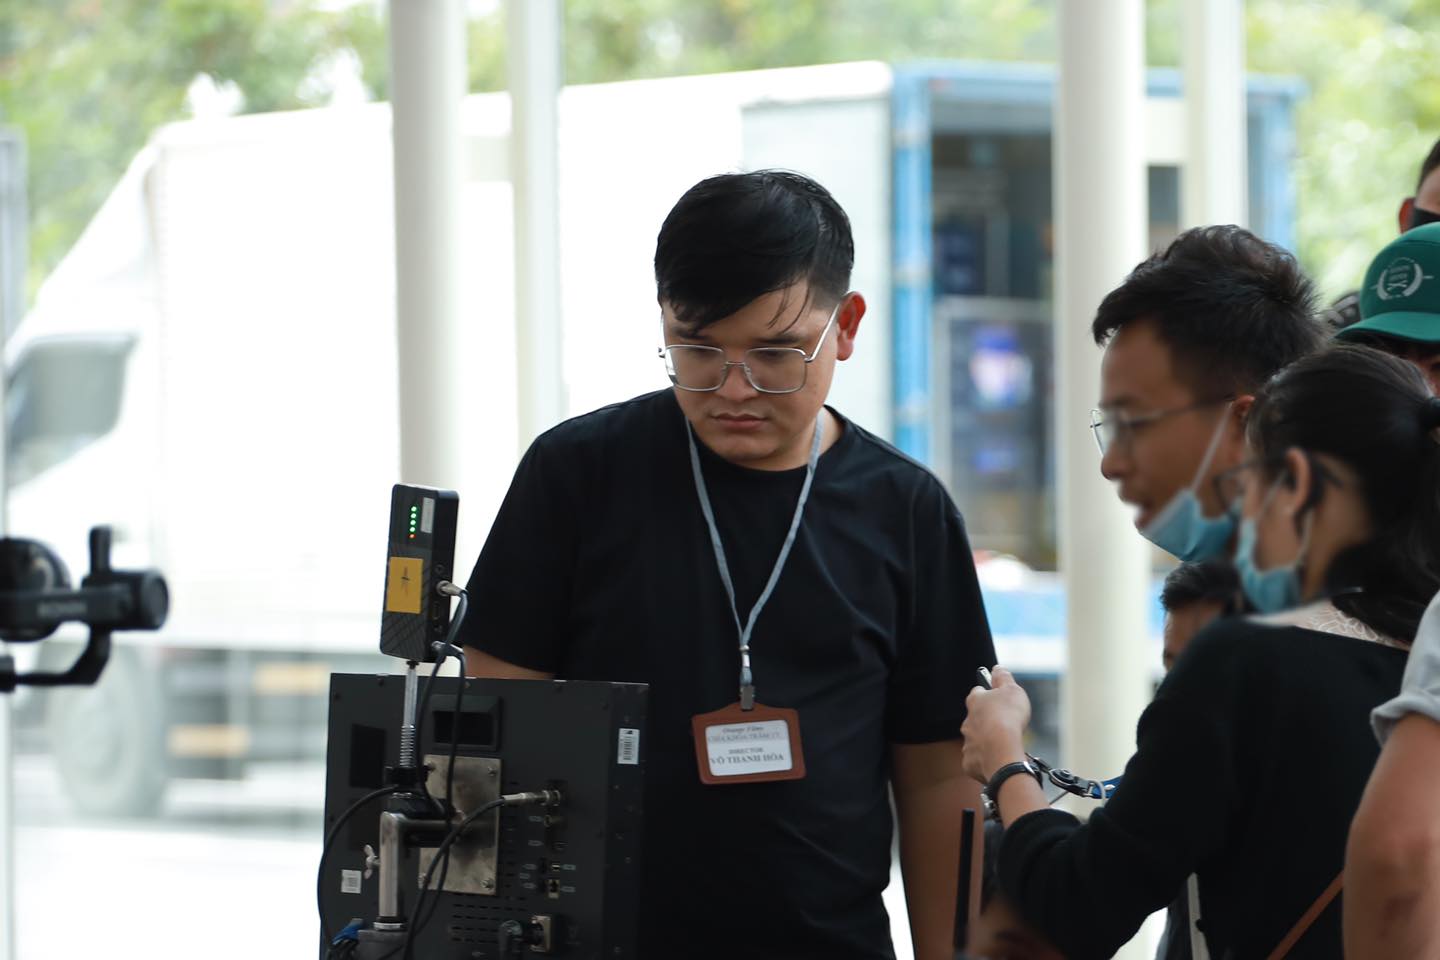 Đạo diễn Võ Thanh Hòa: Làm phim trăm tỷ không phải chỉ để hãnh diện mà để khán giả hài lòng - Ảnh 5.